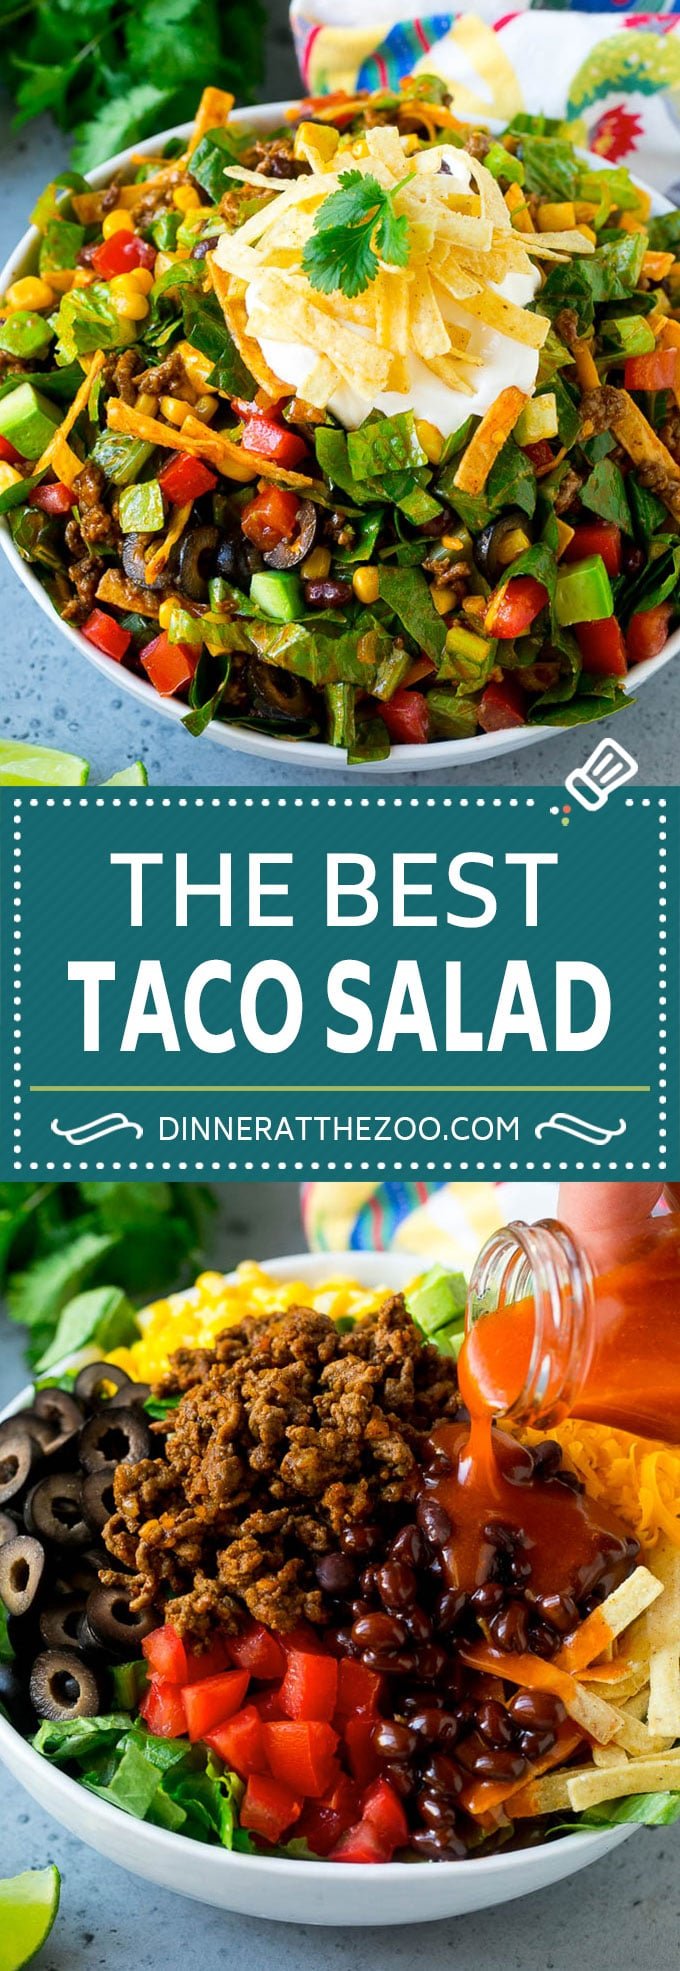 Taco Salad Recipe | Beef Taco Salad | Mexican Salad #salad #taco #beef #lunch #avocado #dinner #dinneratthezoo